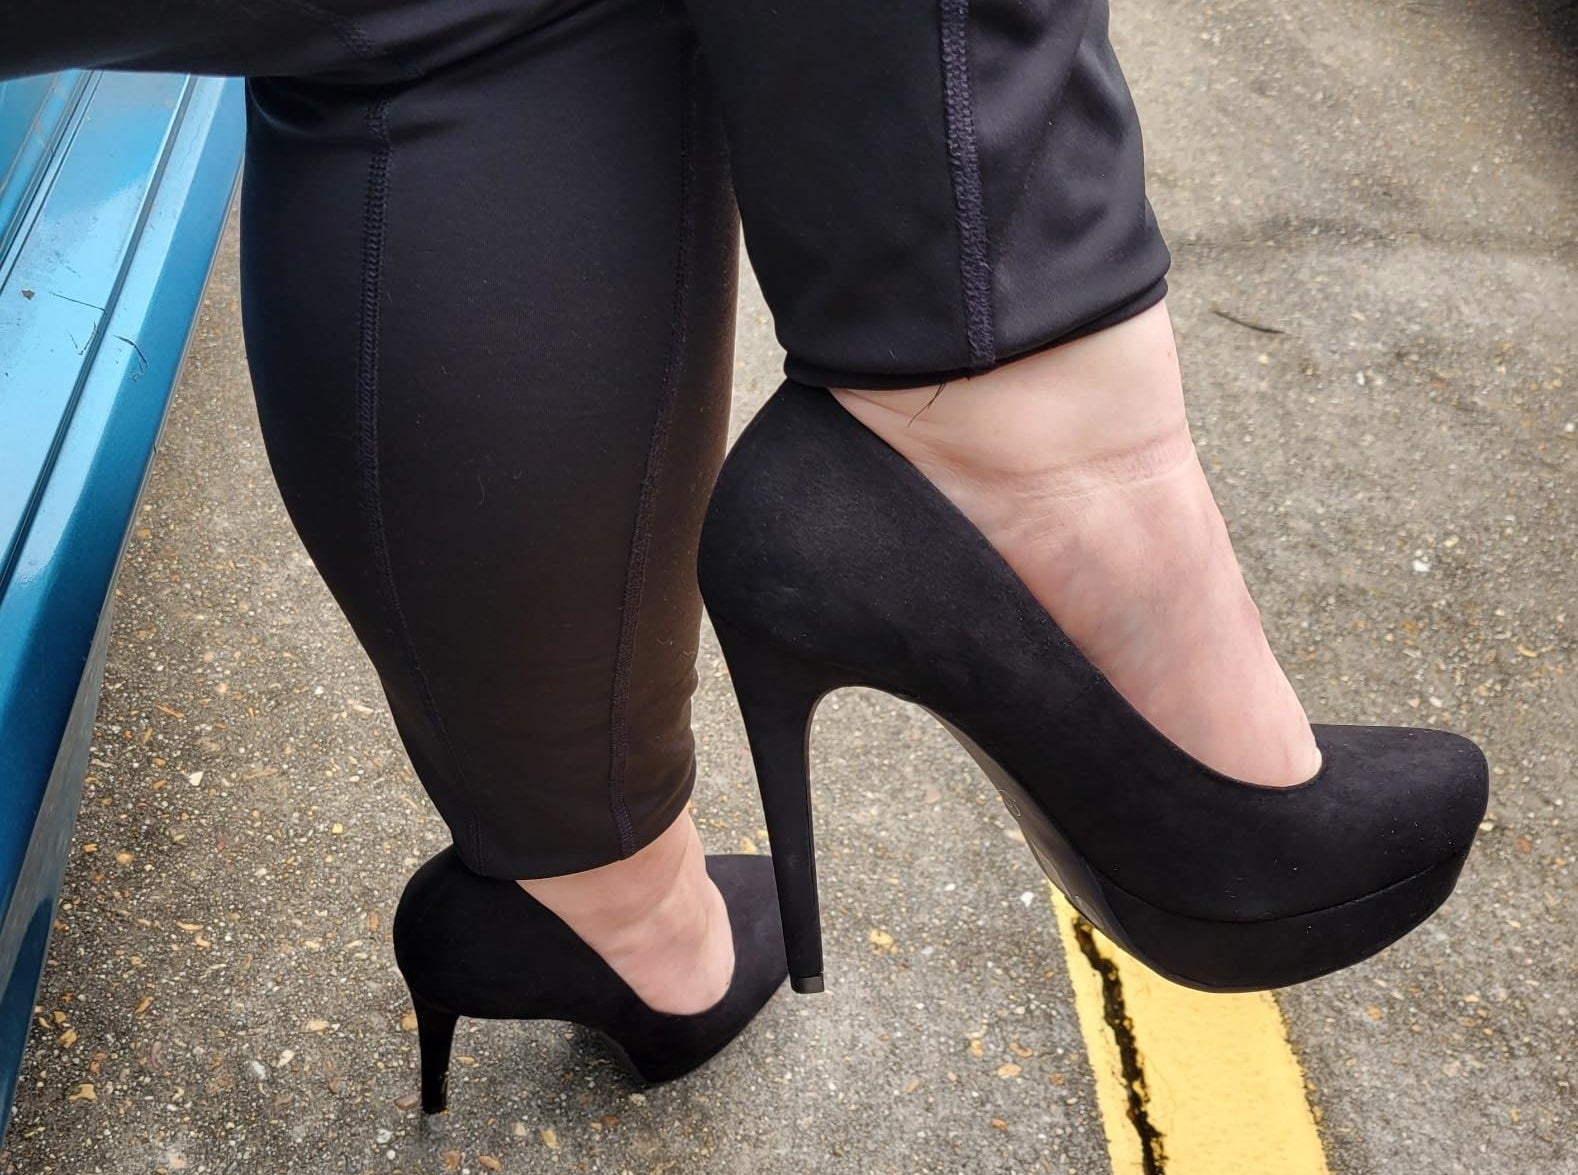 Reviewer wearing the black suede heels